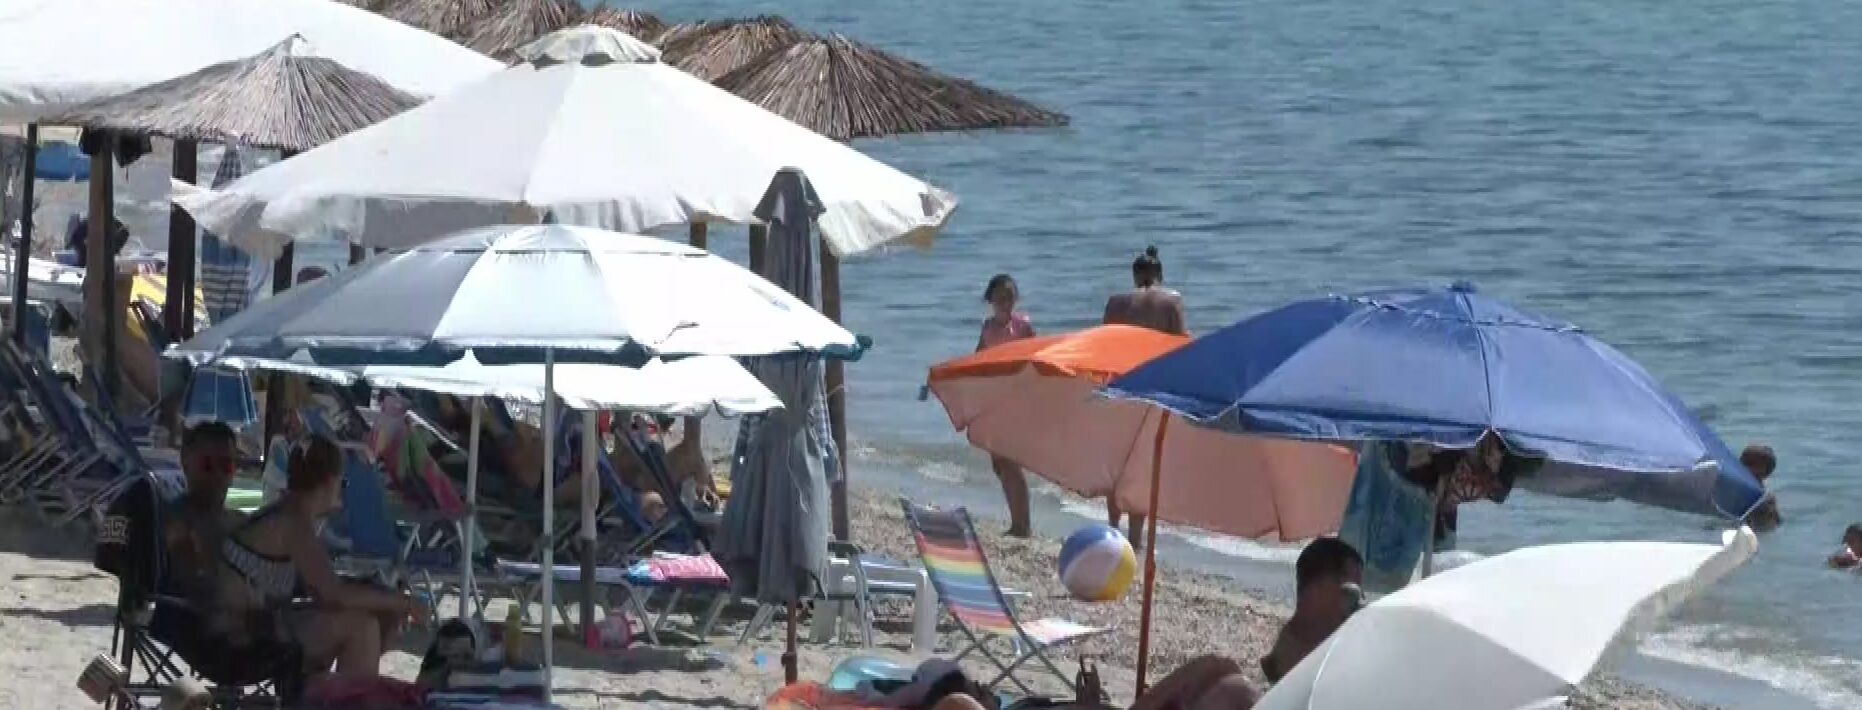 Χαλκιδική: Διαμαρτύρονται οι κάτοικοι για την κατάληψη παραλιών από beach bar